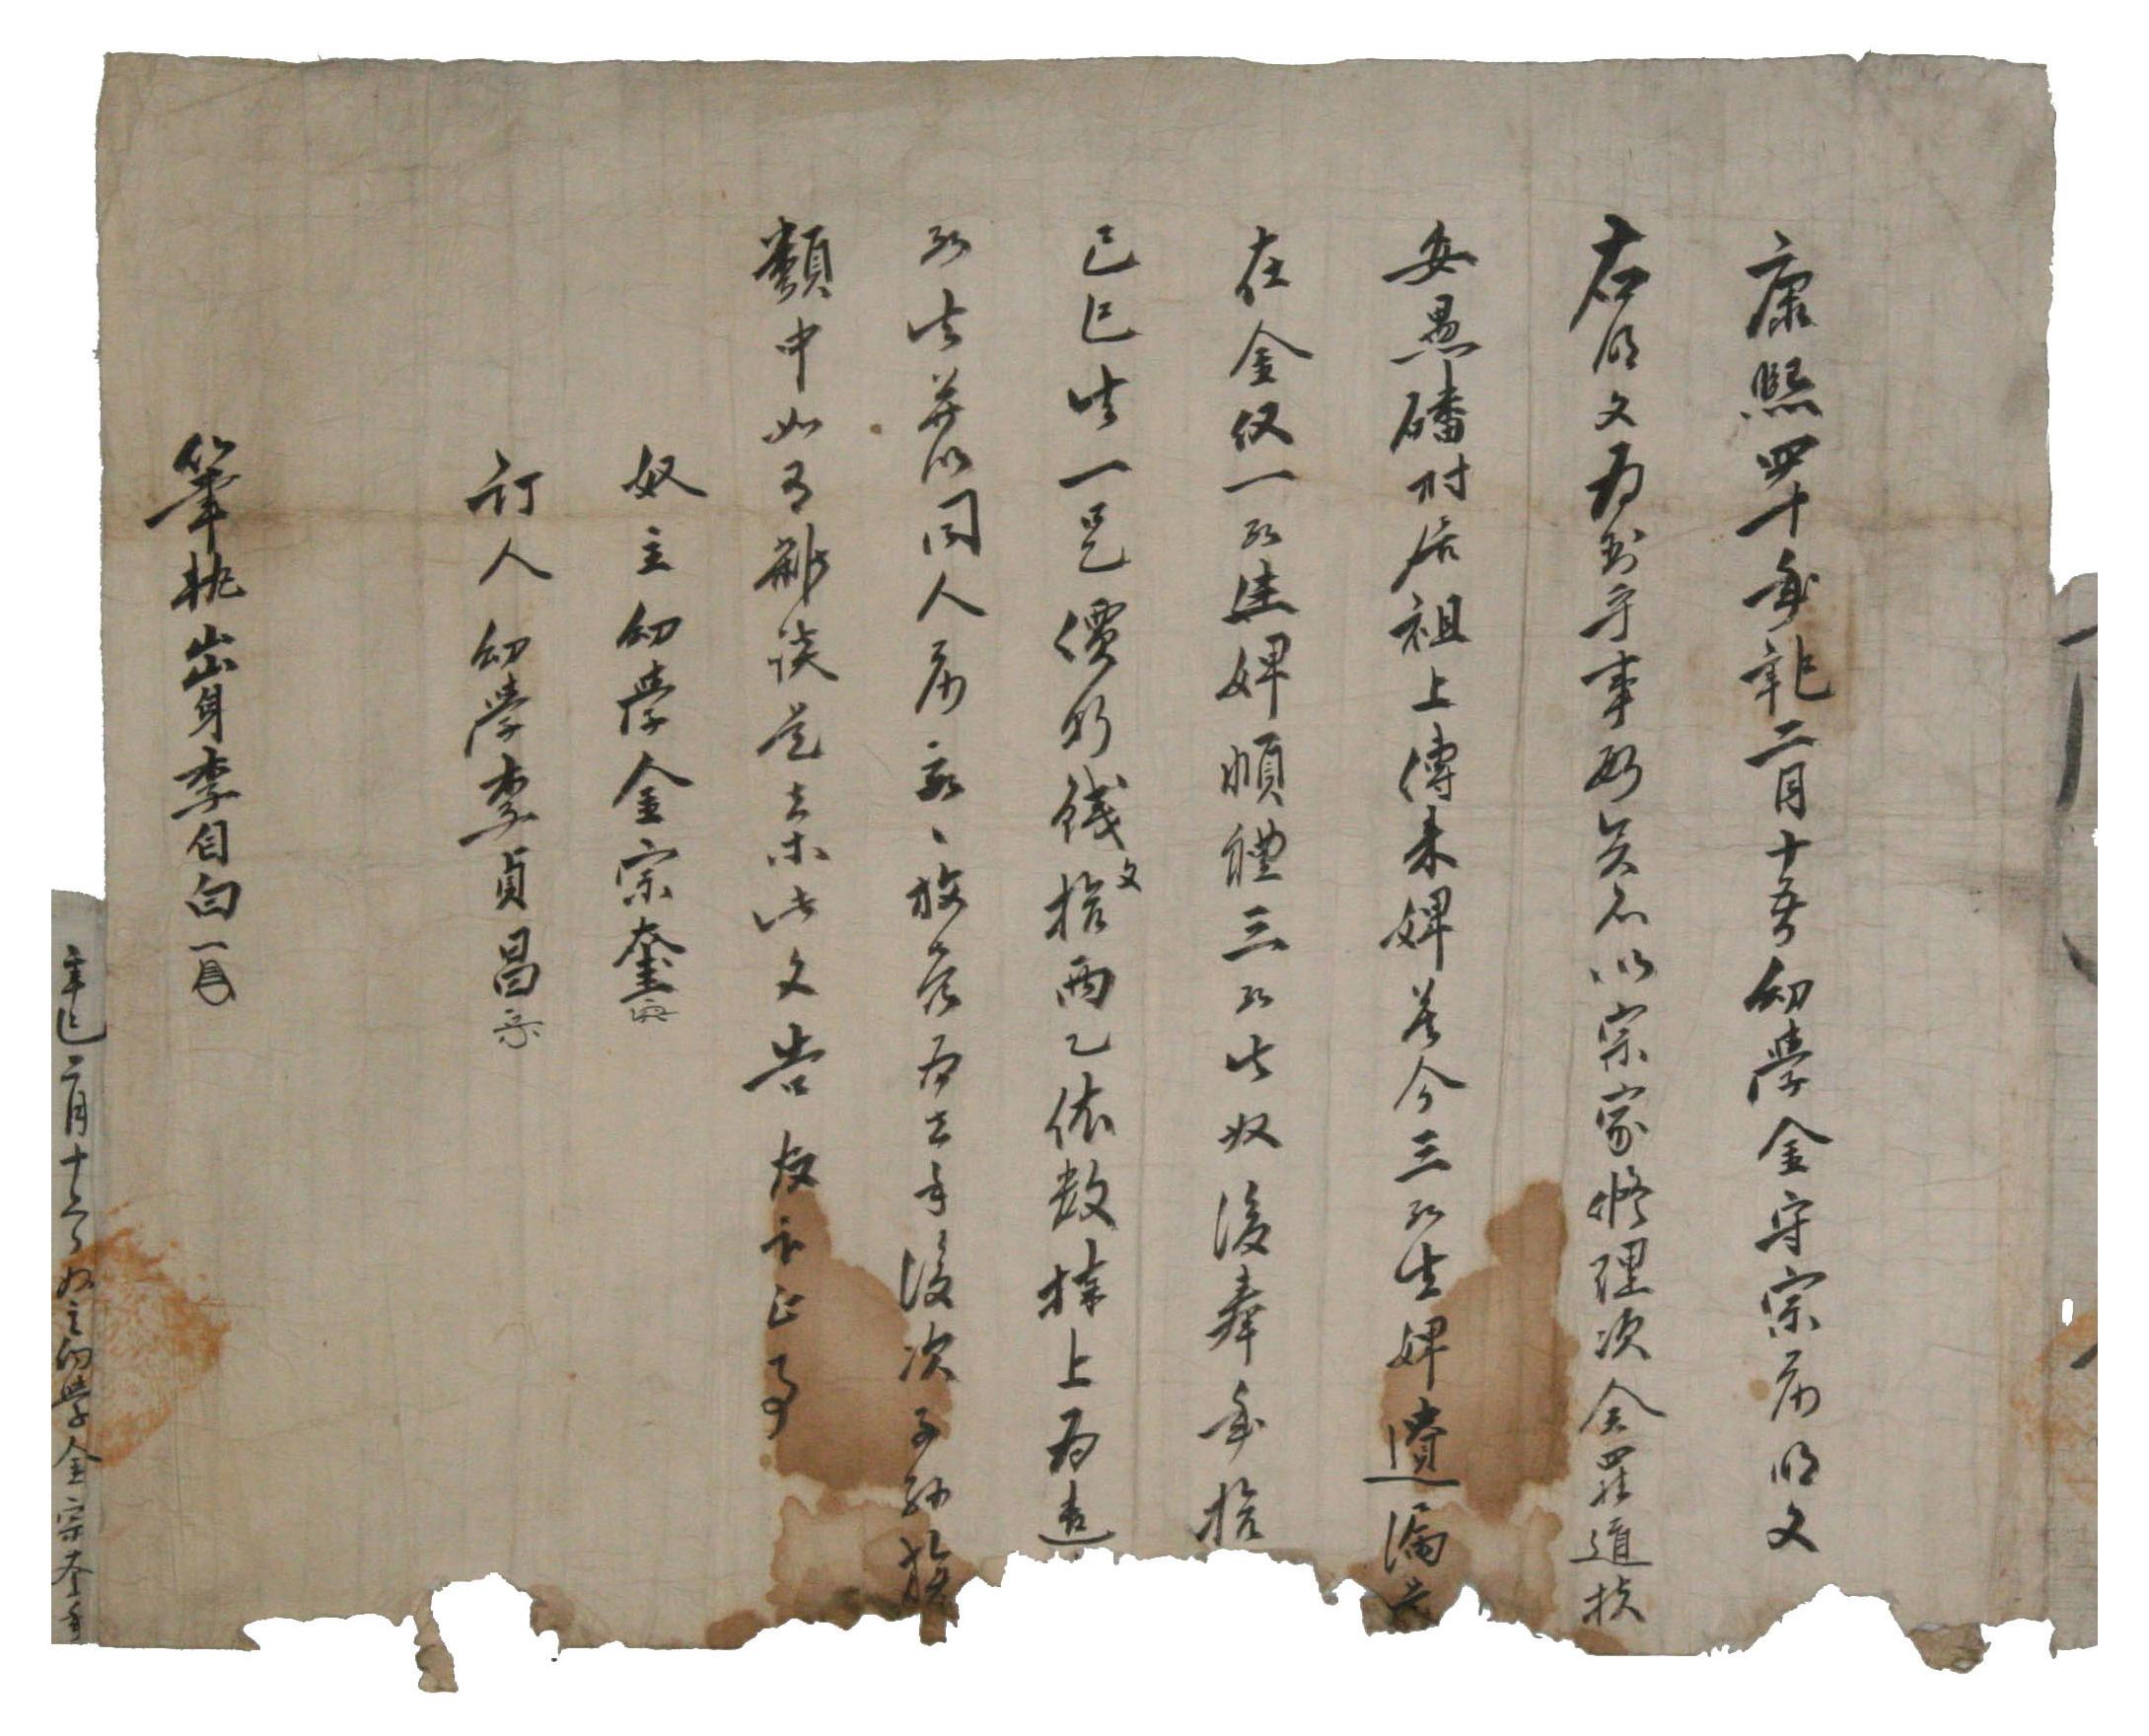 1701년에 유학 김종규가 김수종에게 노비를 방매하면서 작성한 노비매매문기